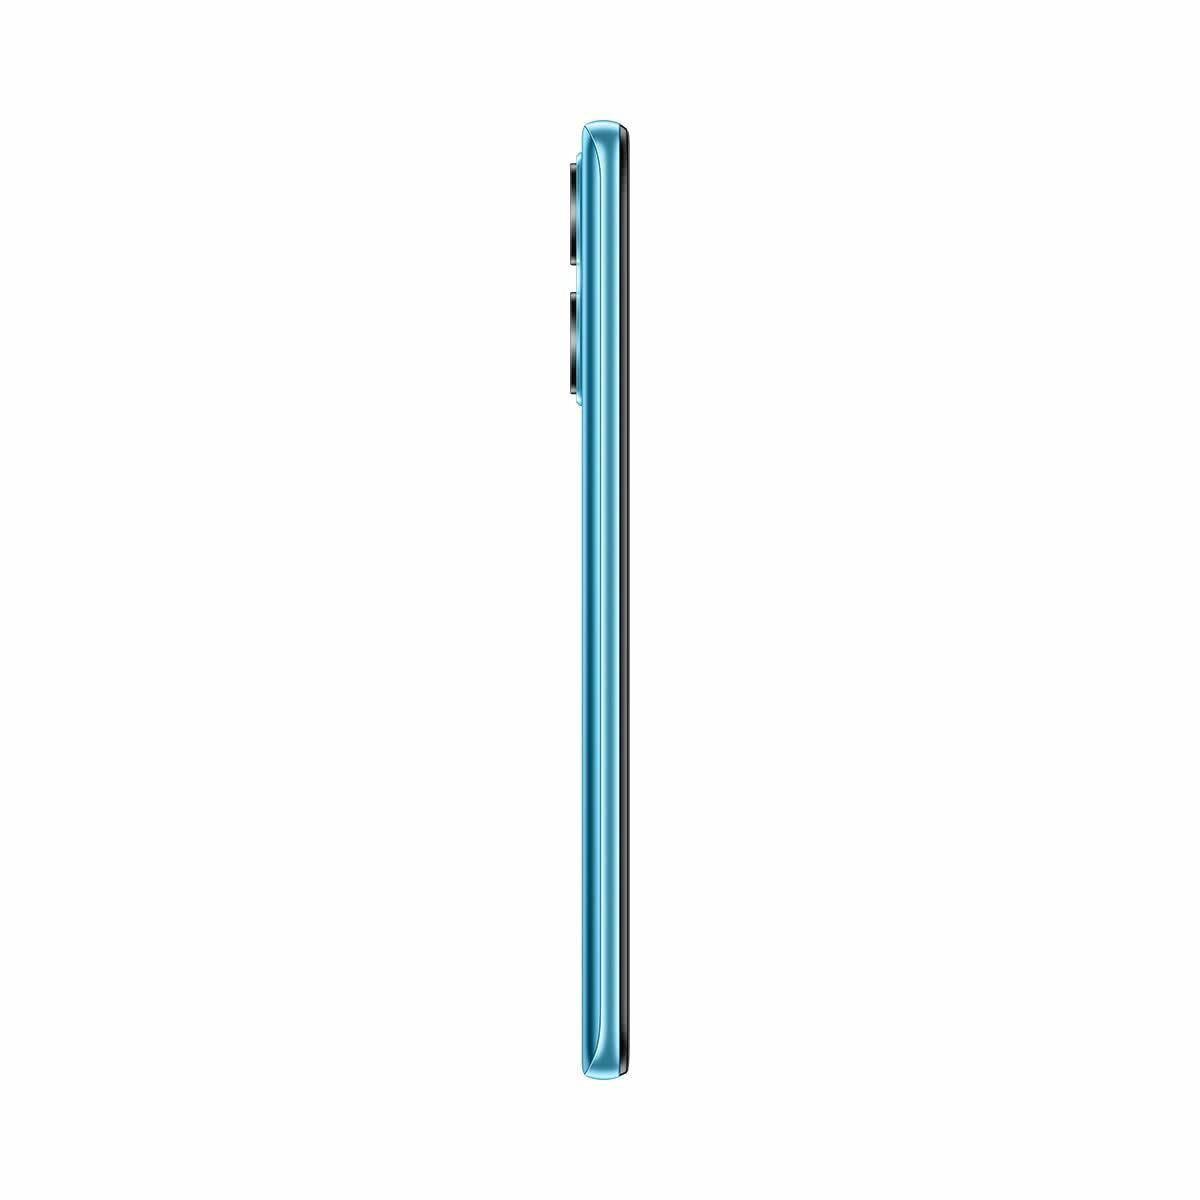 Smartphone Honor X7a Blue Mediatek Helio G37 6,74" 4 GB RAM ARM Cortex-A53 128 GB